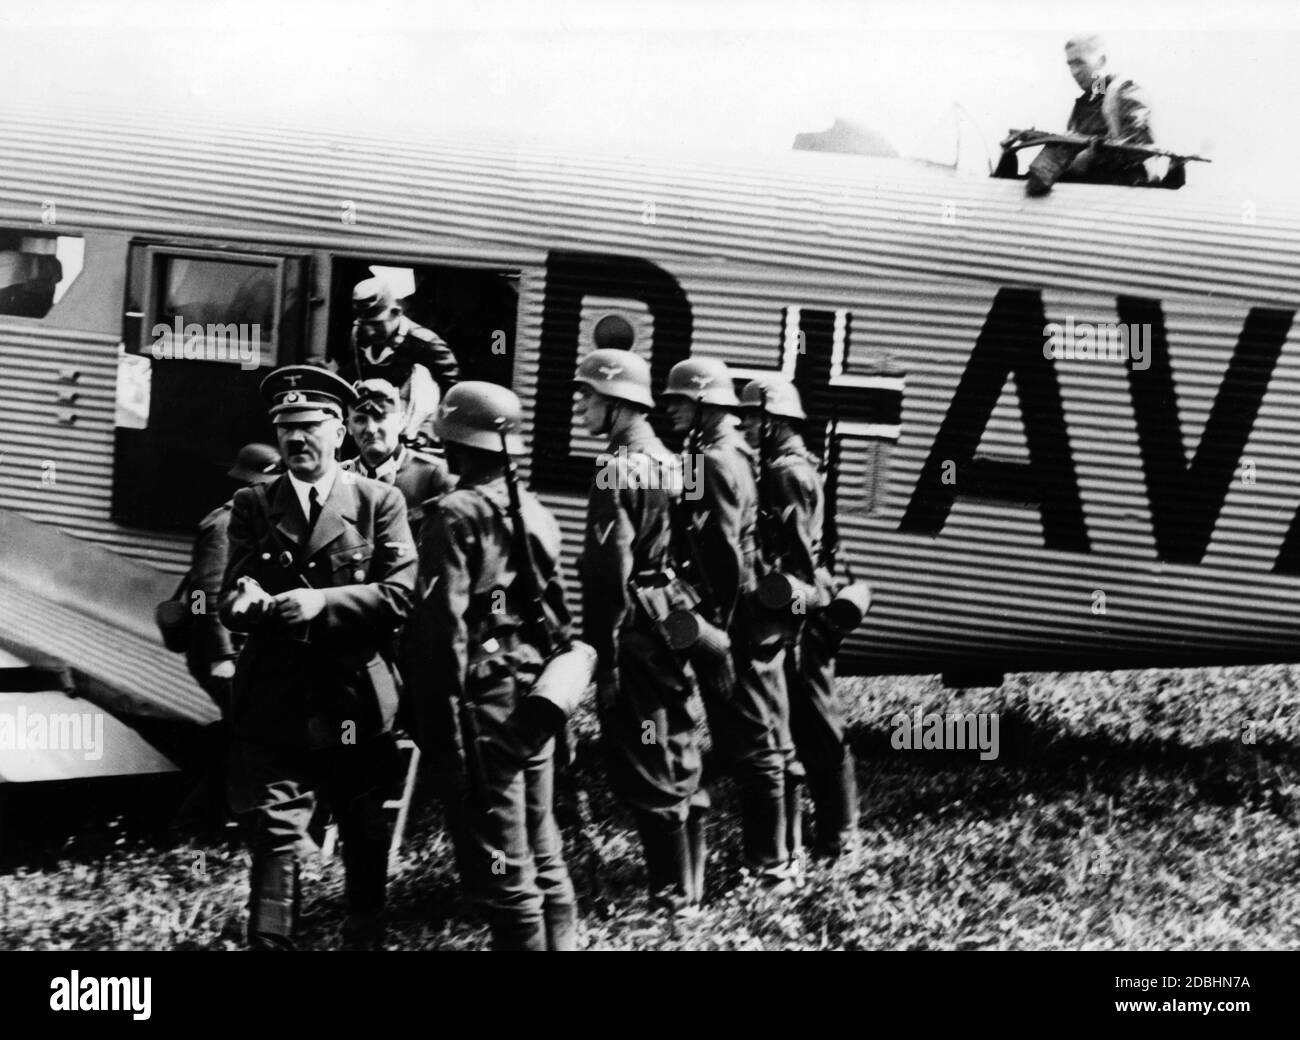 Adolf Hitler verlässt während des polnischen Feldzugs das Flugzeug des Führers. Neben ihm sind Soldaten der Luftwaffe. Stockfoto